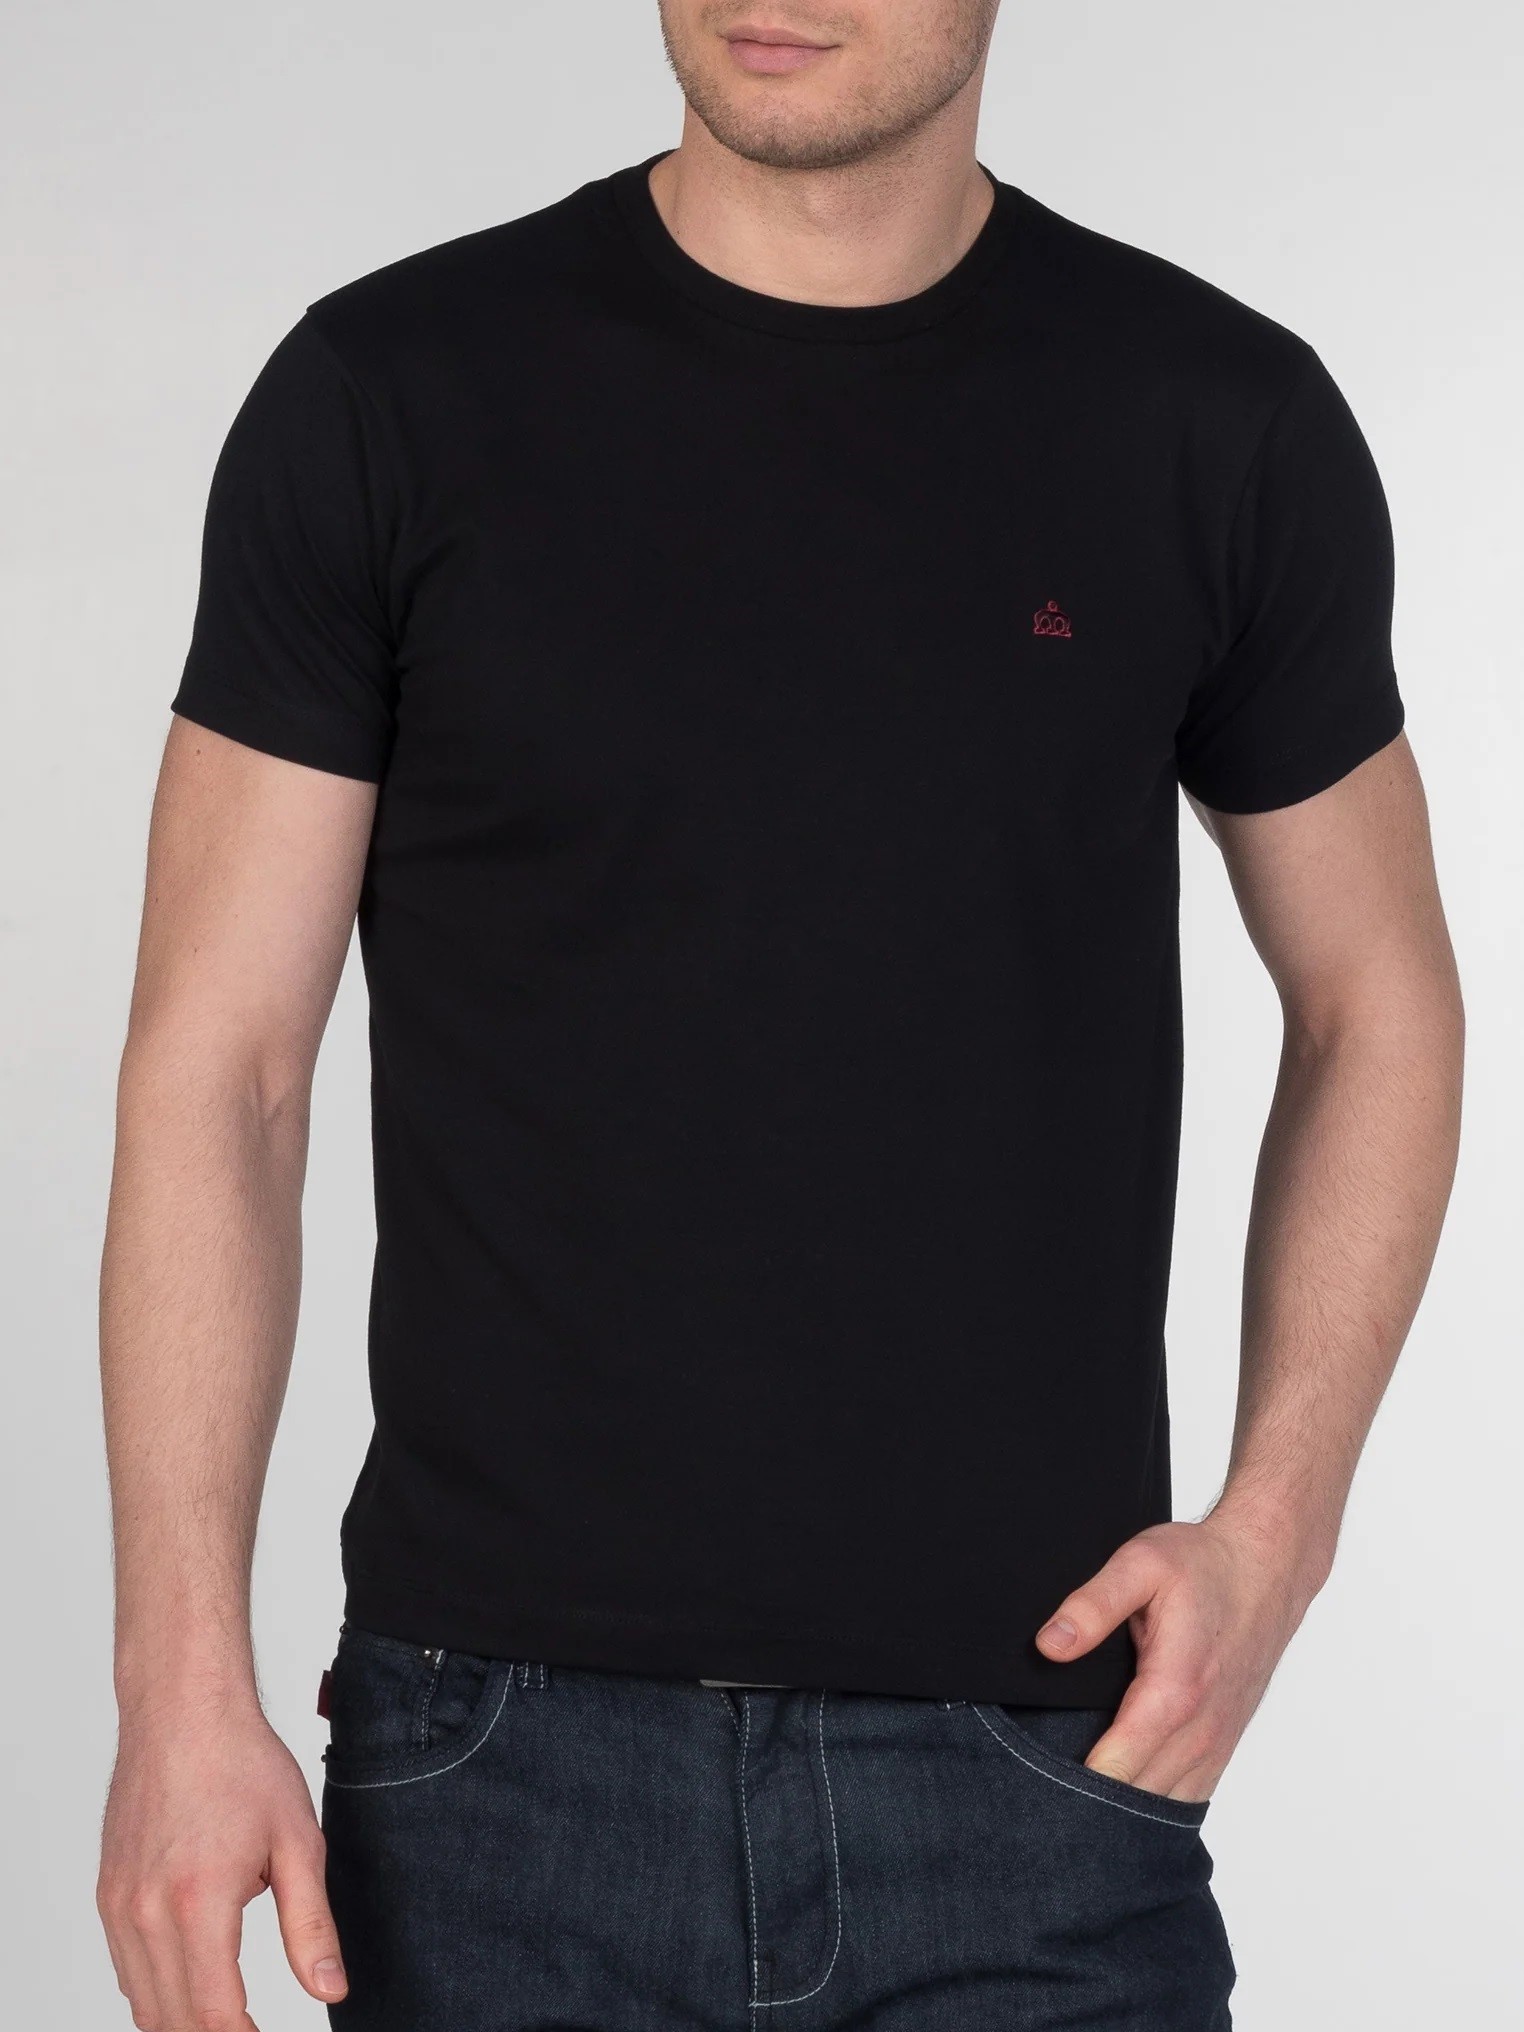 Однотонная мужская футболка Merc Keyport с вышитым на груди логотипом Корона, черная (black), купить на официальном сайте 